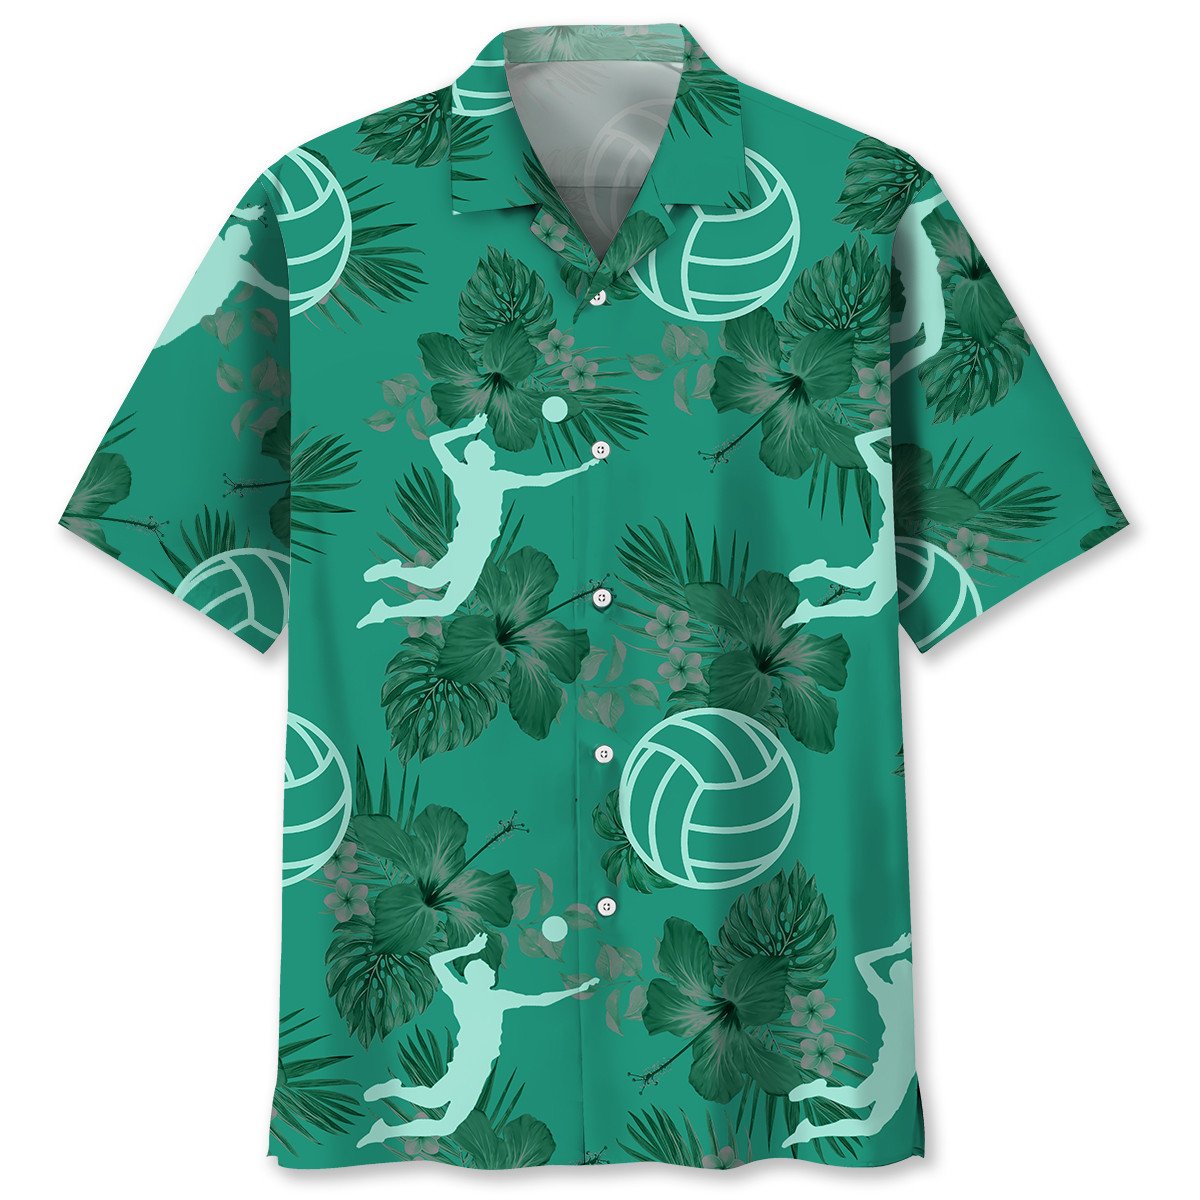 NEW Volleyball Kelly Green Hawaiian Shirt